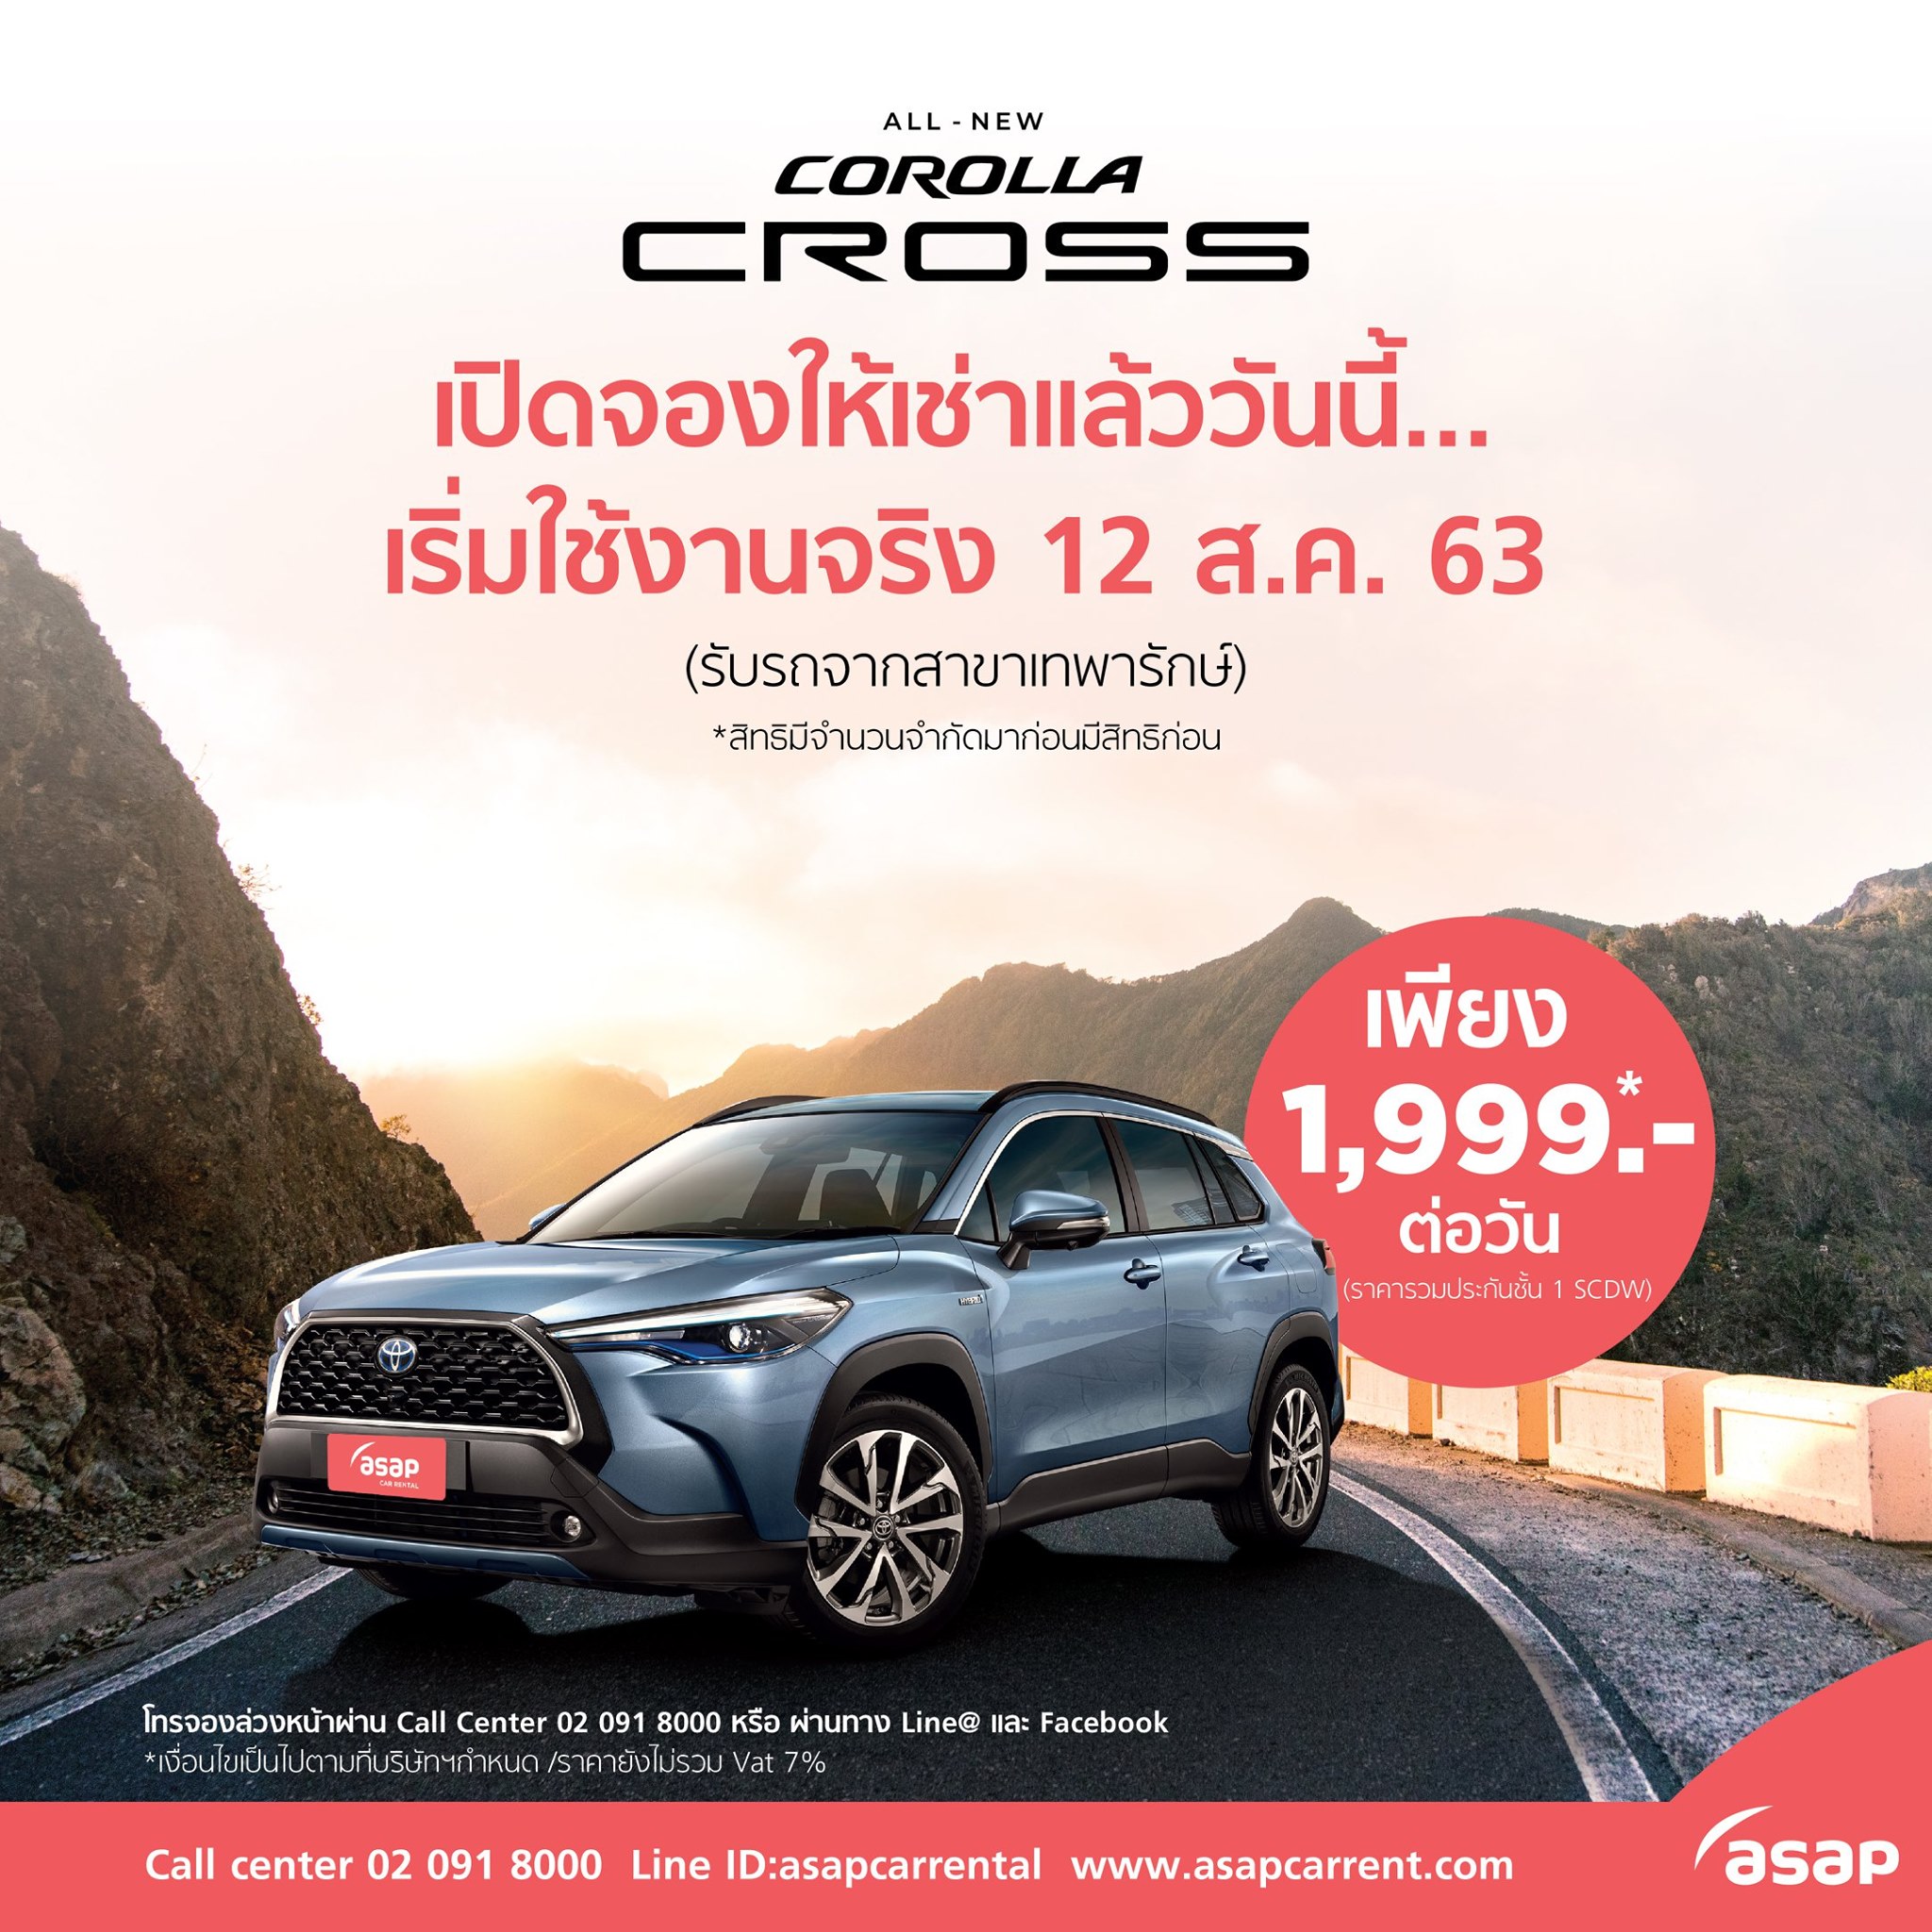 Gossip News: ASAP เปิดจองเช่ารถรุ่นใหม่ TOYOTA Corolla Cross ให้ลูกค้าใช้บริการก่อนใครในราคาเพียง 1,999